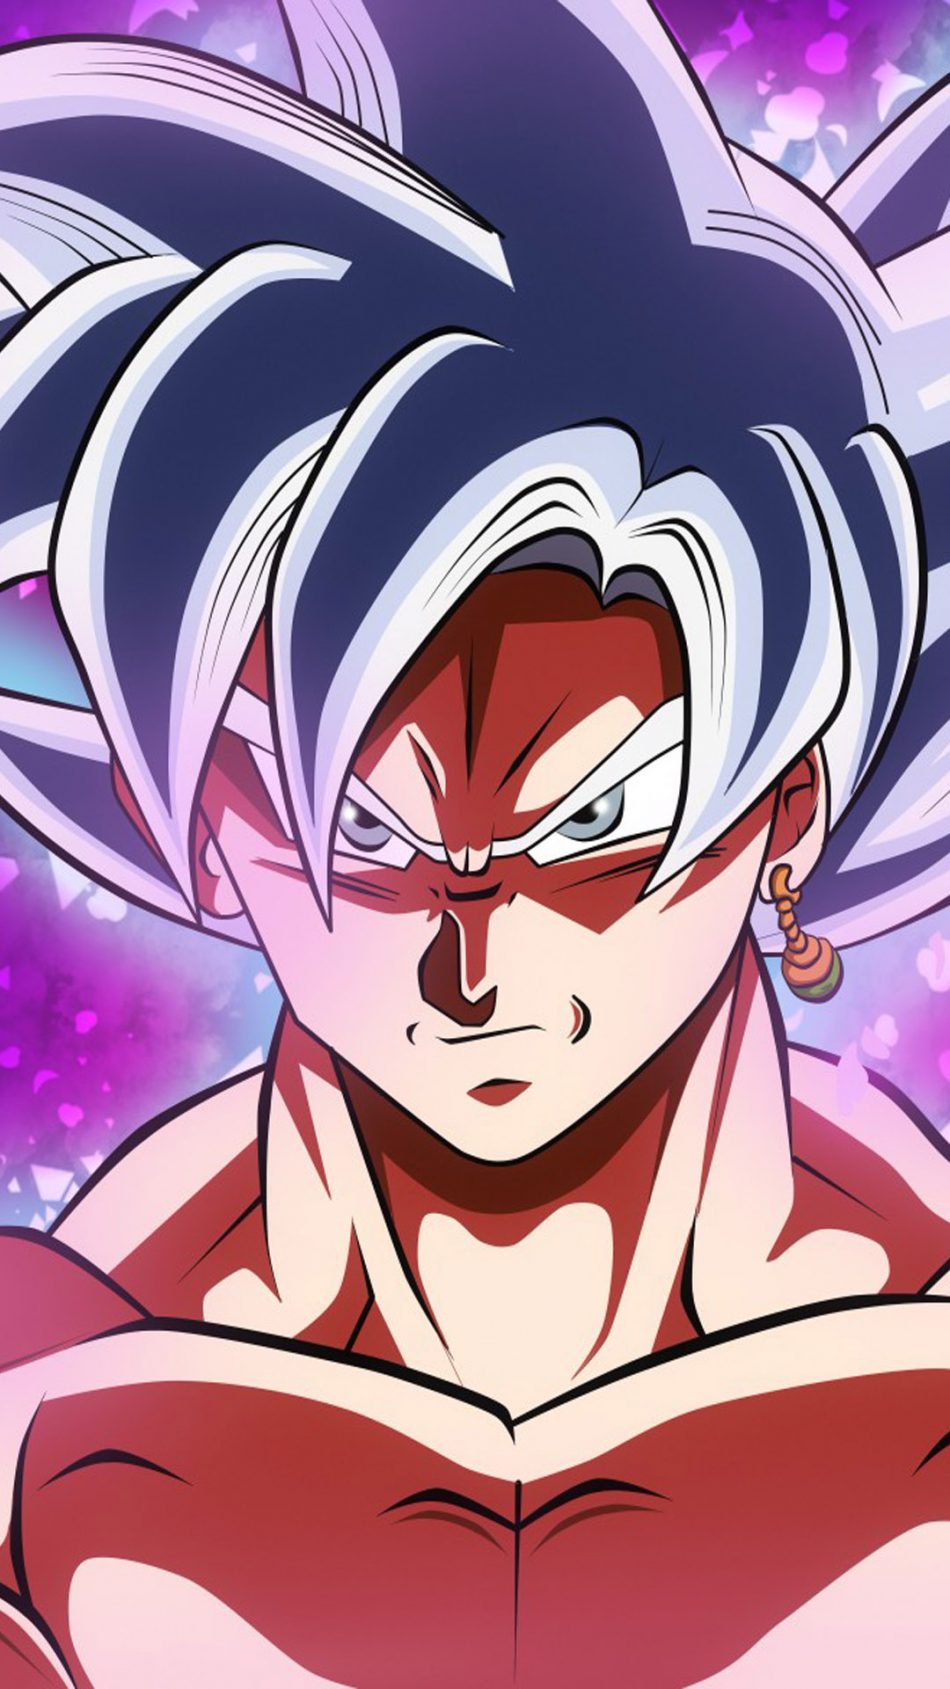 Bạn đam mê Goku Black? Hãy xem bức tranh với chất lượng Ultra HD này để thấy rõ hơn vẻ đẹp và sức mạnh của nhân vật ấy. Chi tiết tuyệt vời về áo ngực cùng chi tiết ánh sáng tuyệt đẹp, tất cả sẽ khiến bạn thấy như lạc vào thế giới Dragon Ball quen thuộc.